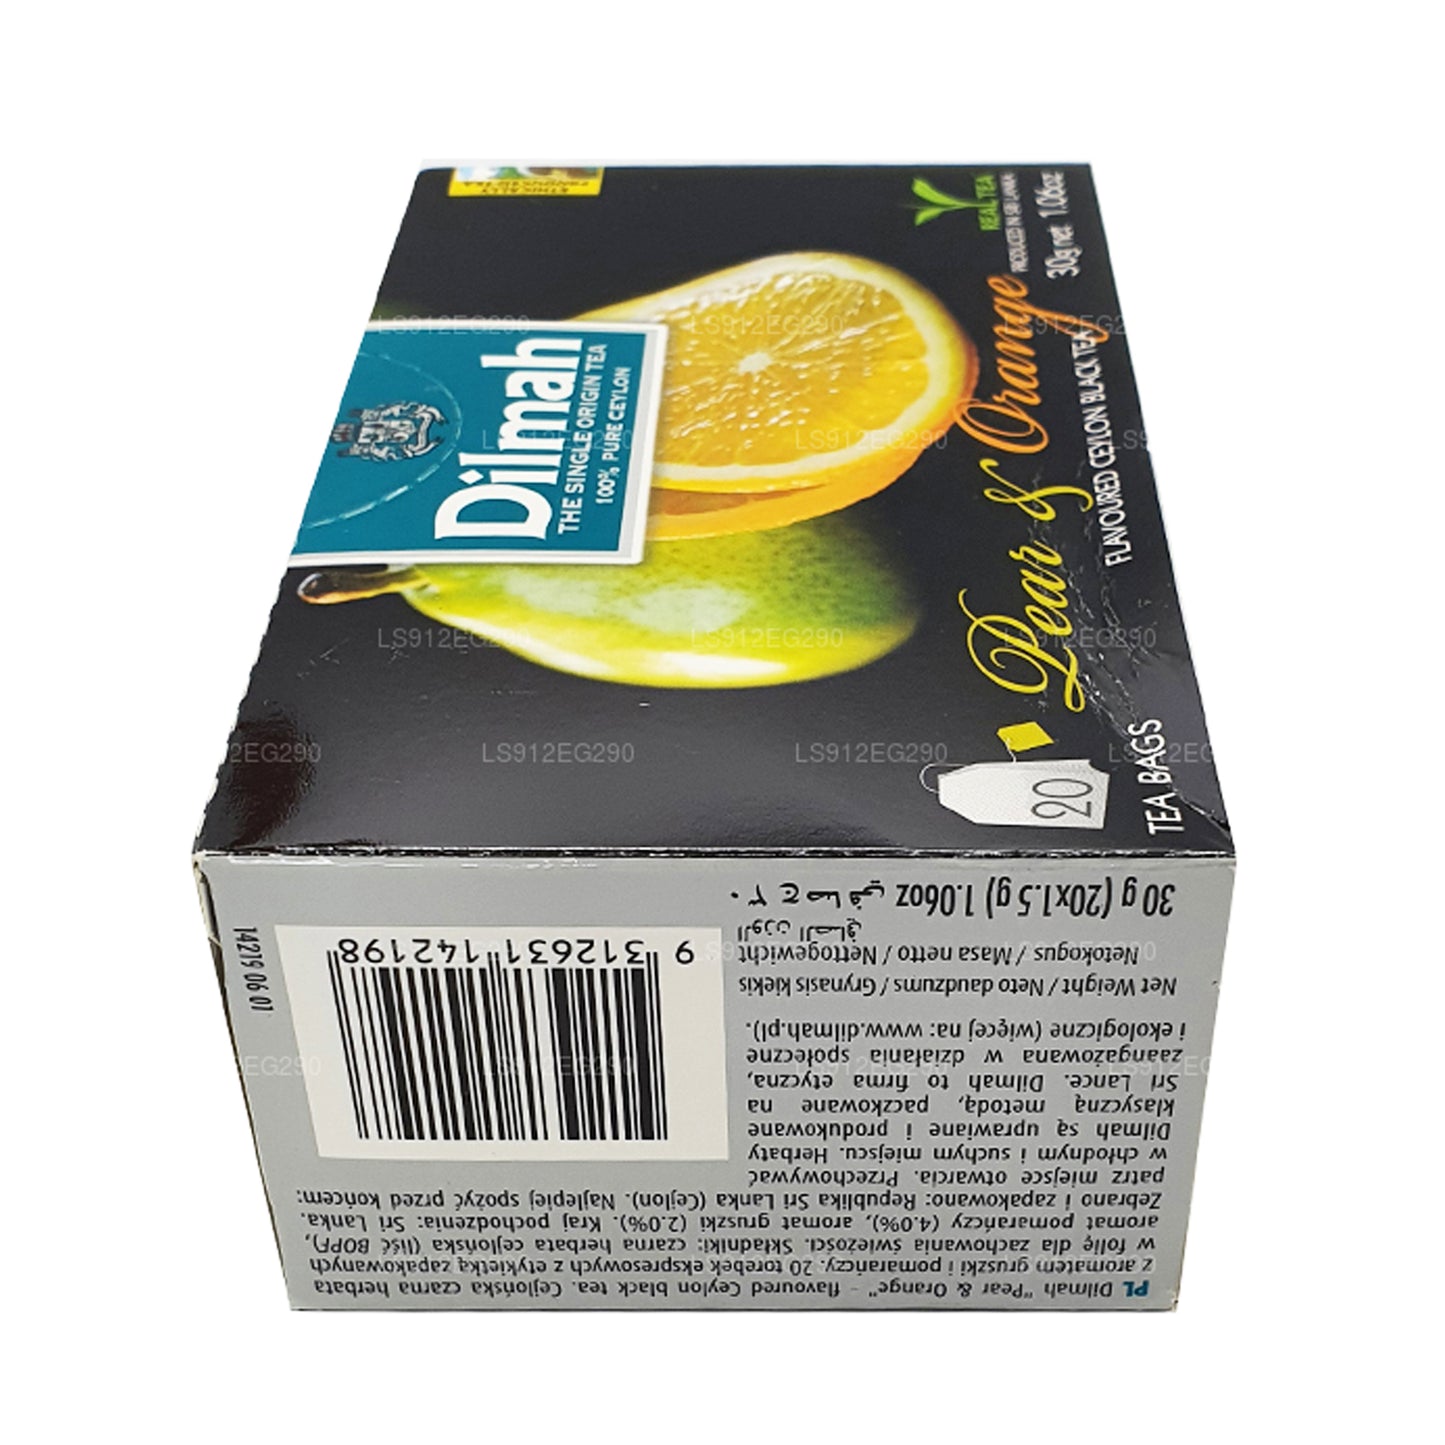 Dilmah pære og orange aromatiseret Ceylon sort te (30 g) 20 teposer